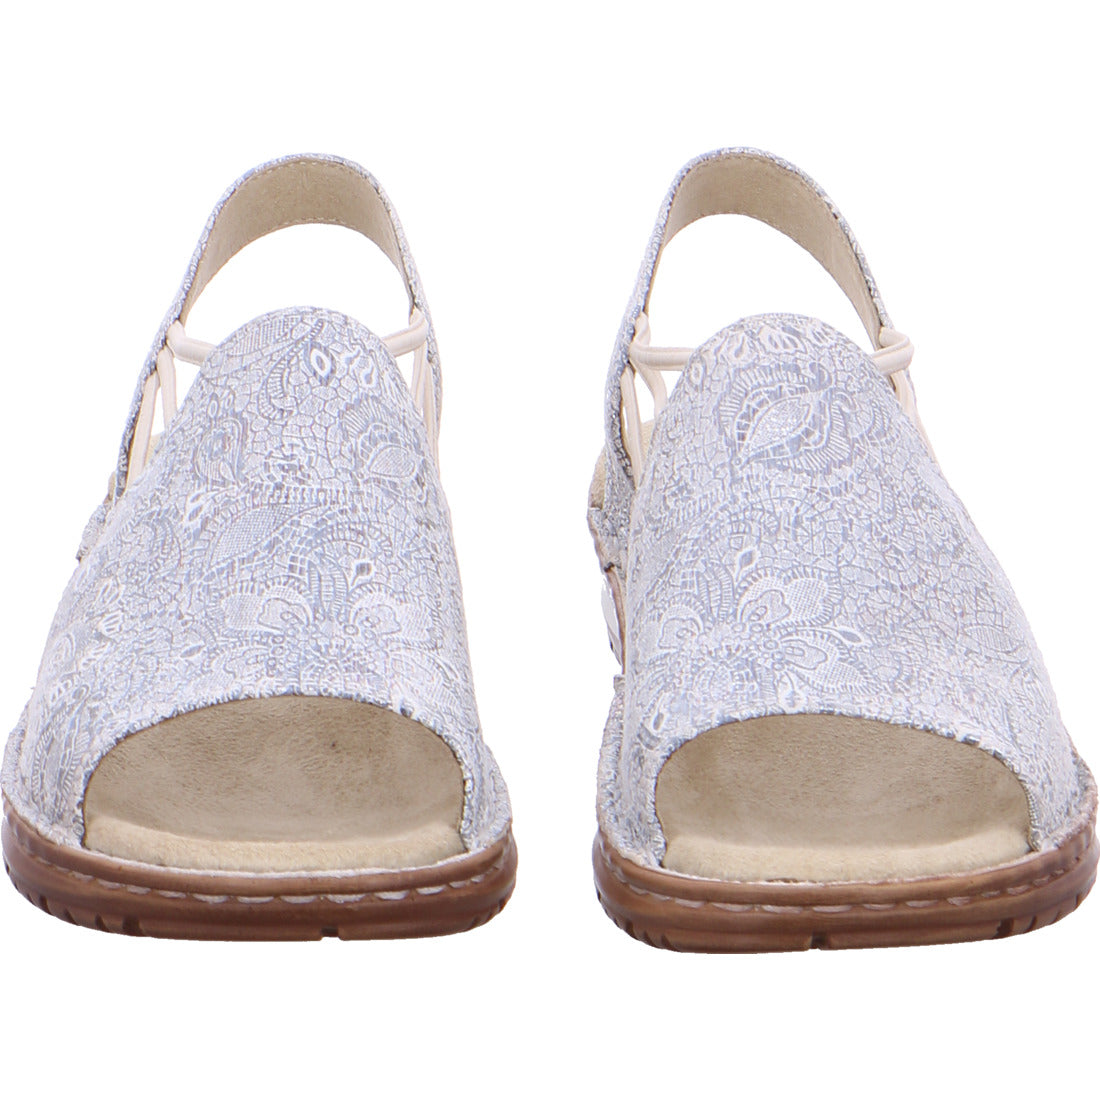 Ara Women's Hawaii 12-27241 Suede Wedge Heel Sandals Silver